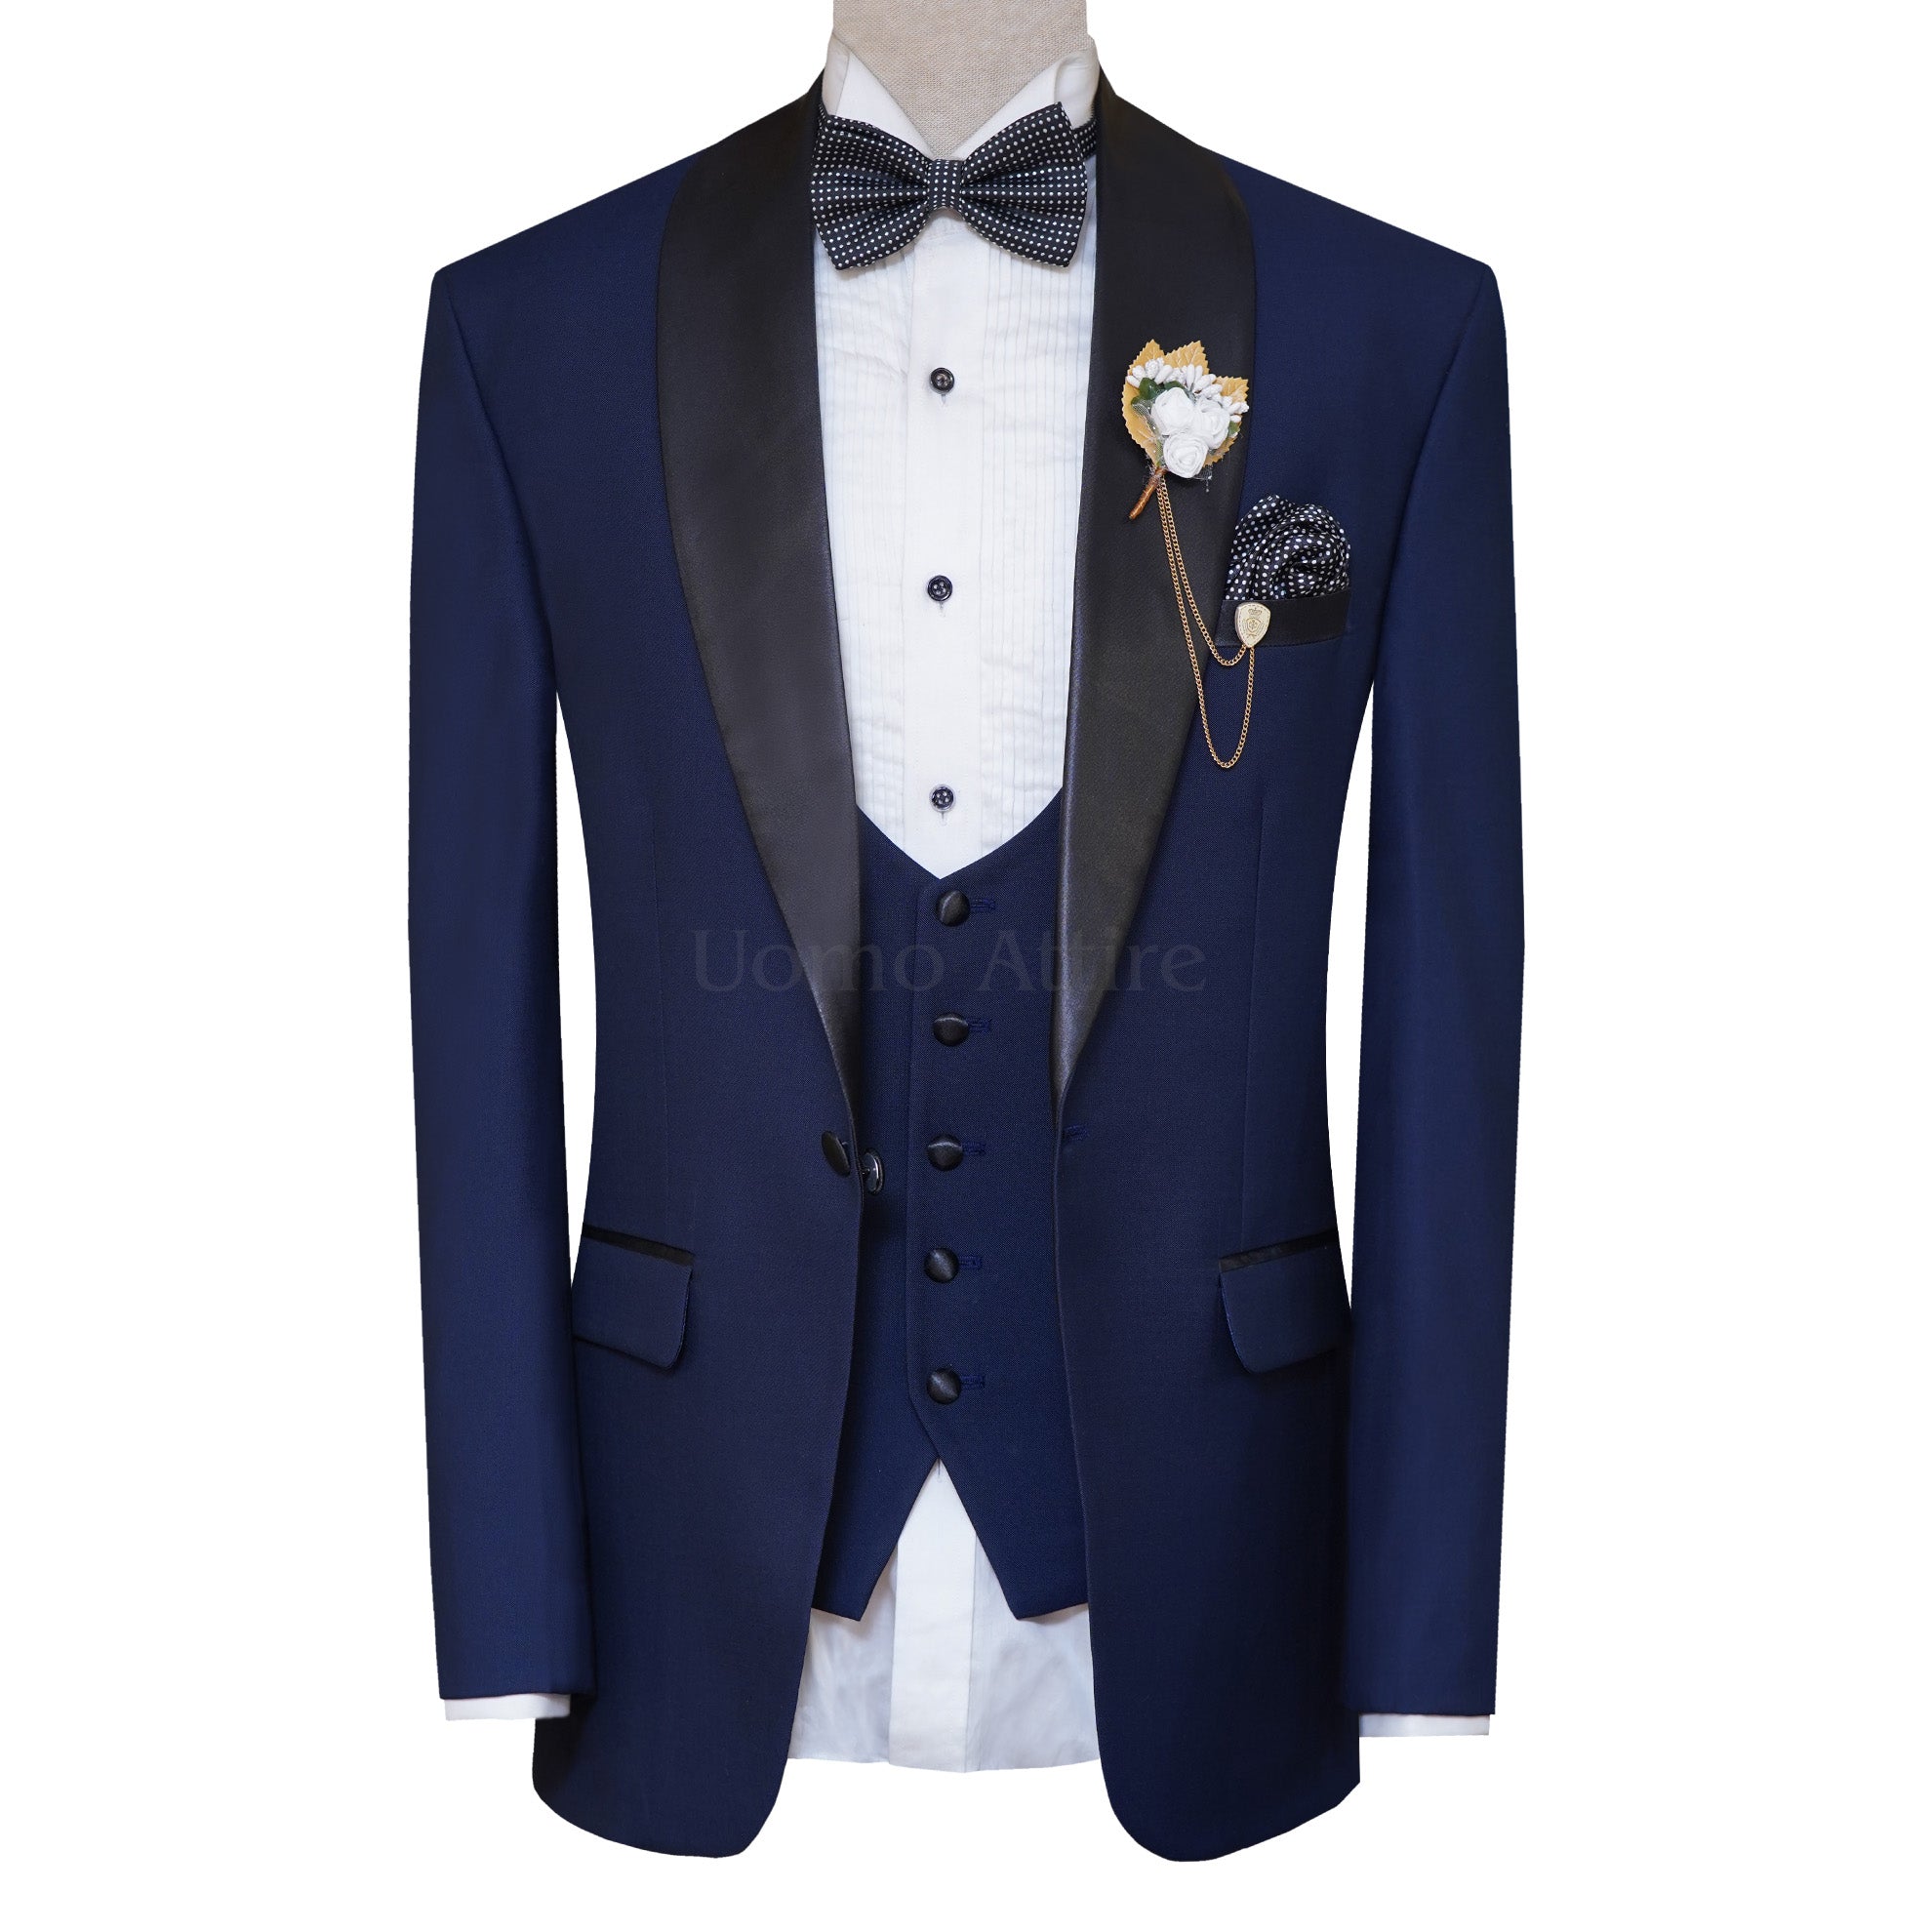 Blue Groom Tuxedo Suit for Wedding with Black Velvet Shawl